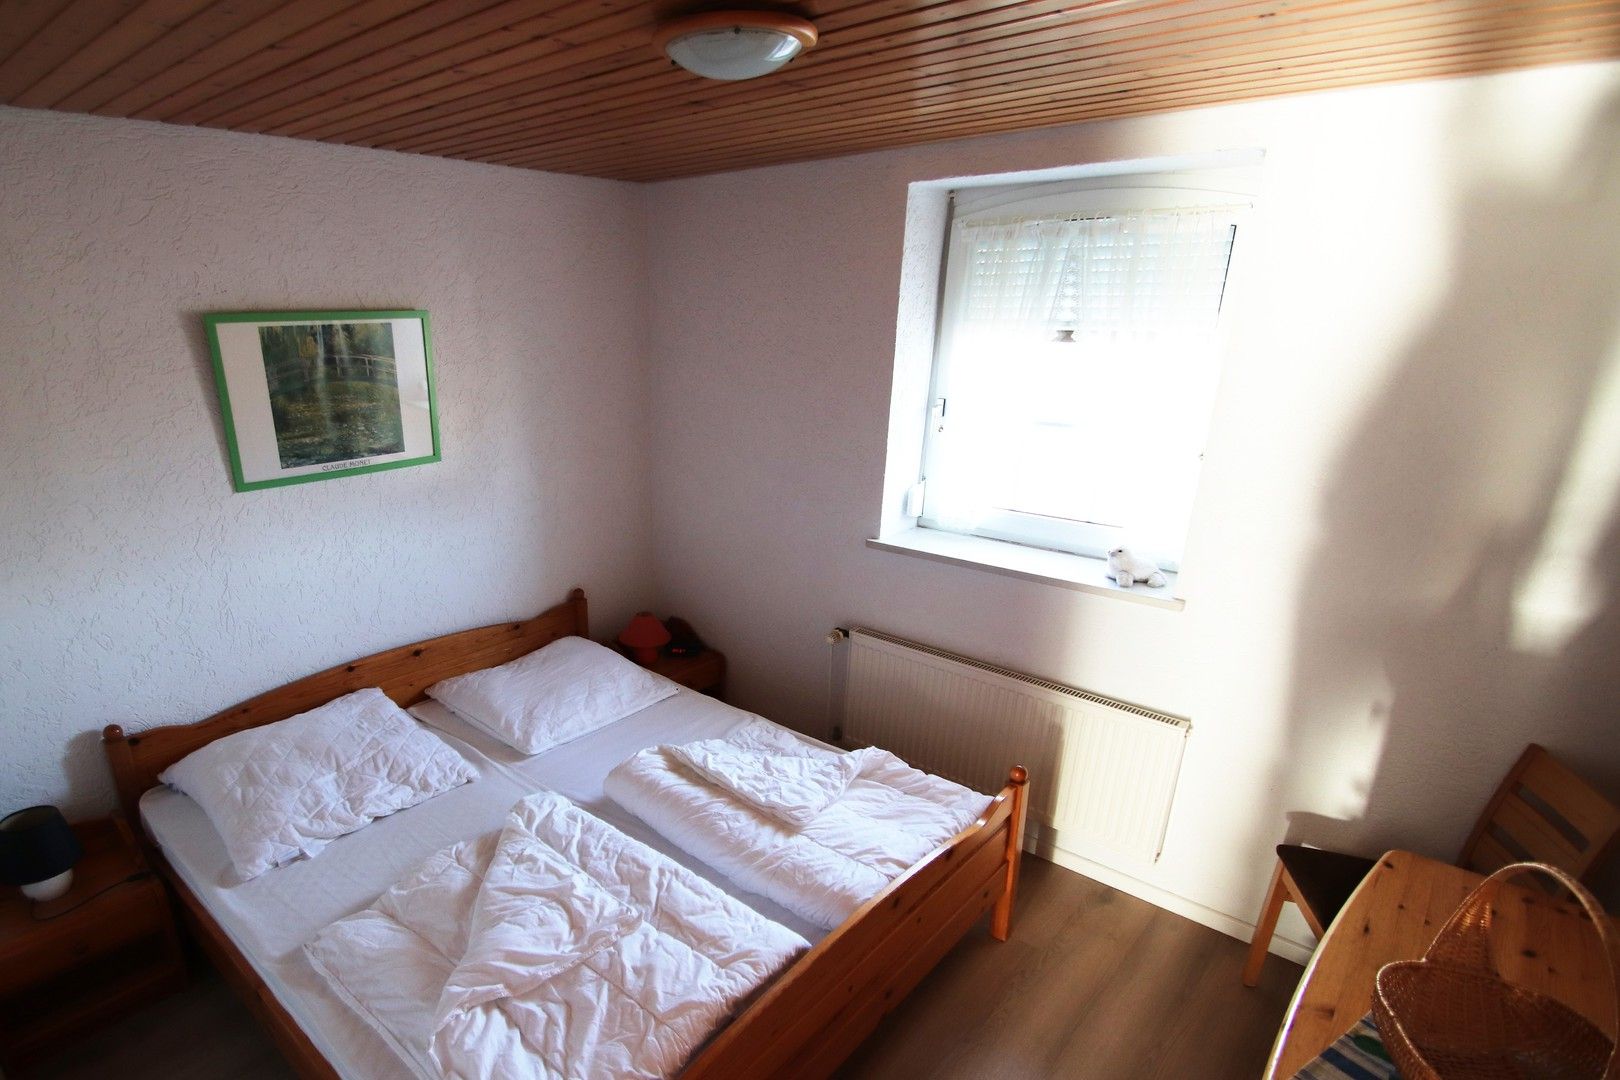 Schlafraum mit Doppelbett Ferienwohnung 129 Koogstraße 132 Nordsee Friedrichskoog